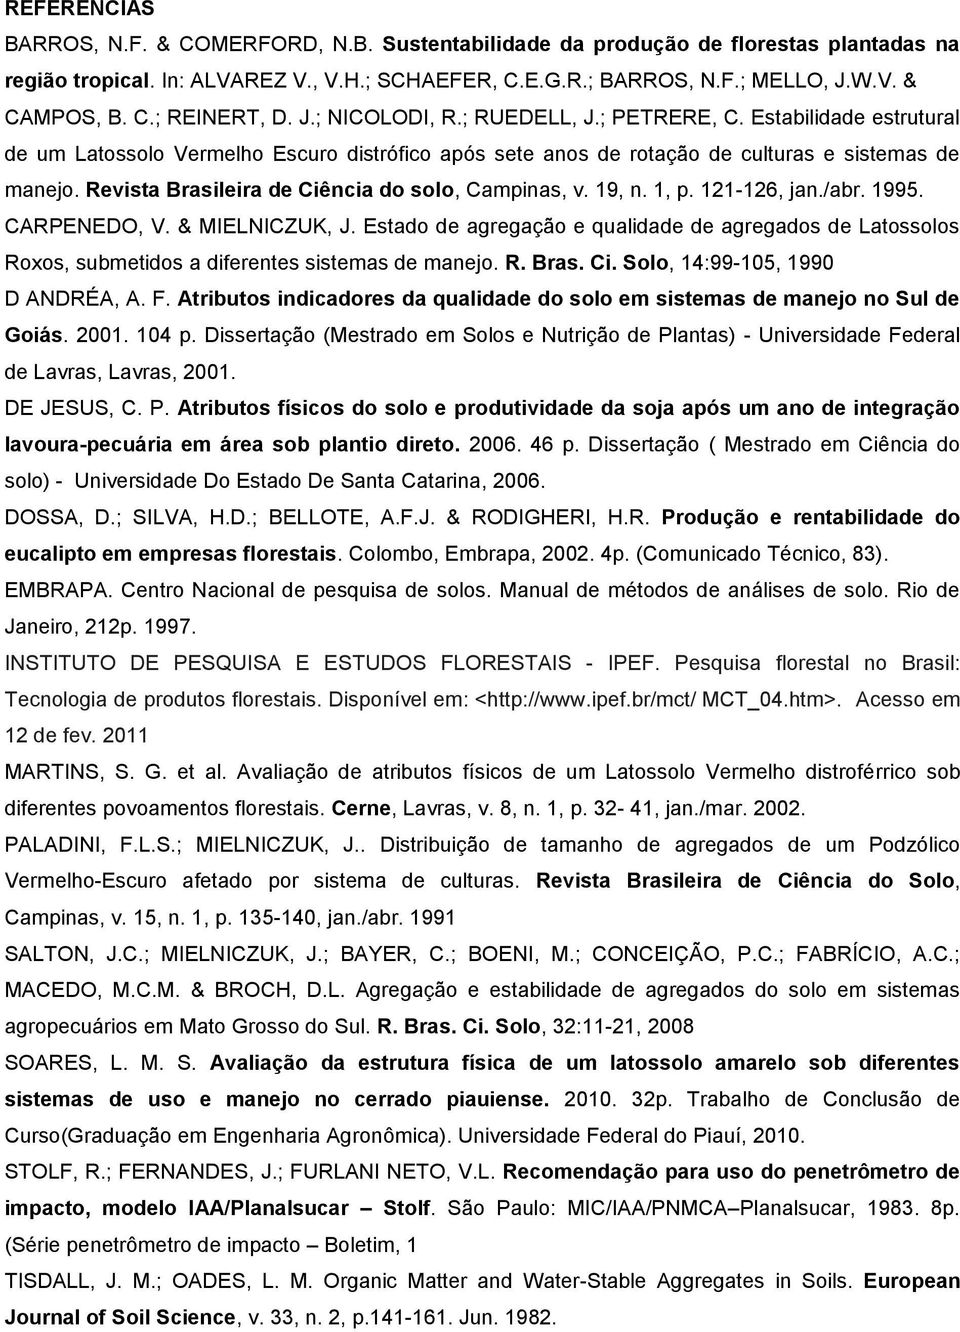 Revista Brasileira de Ciência do solo, Campinas, v. 19, n. 1, p. 121-126, jan./abr. 1995. CARPENEDO, V. & MIELNICZUK, J.